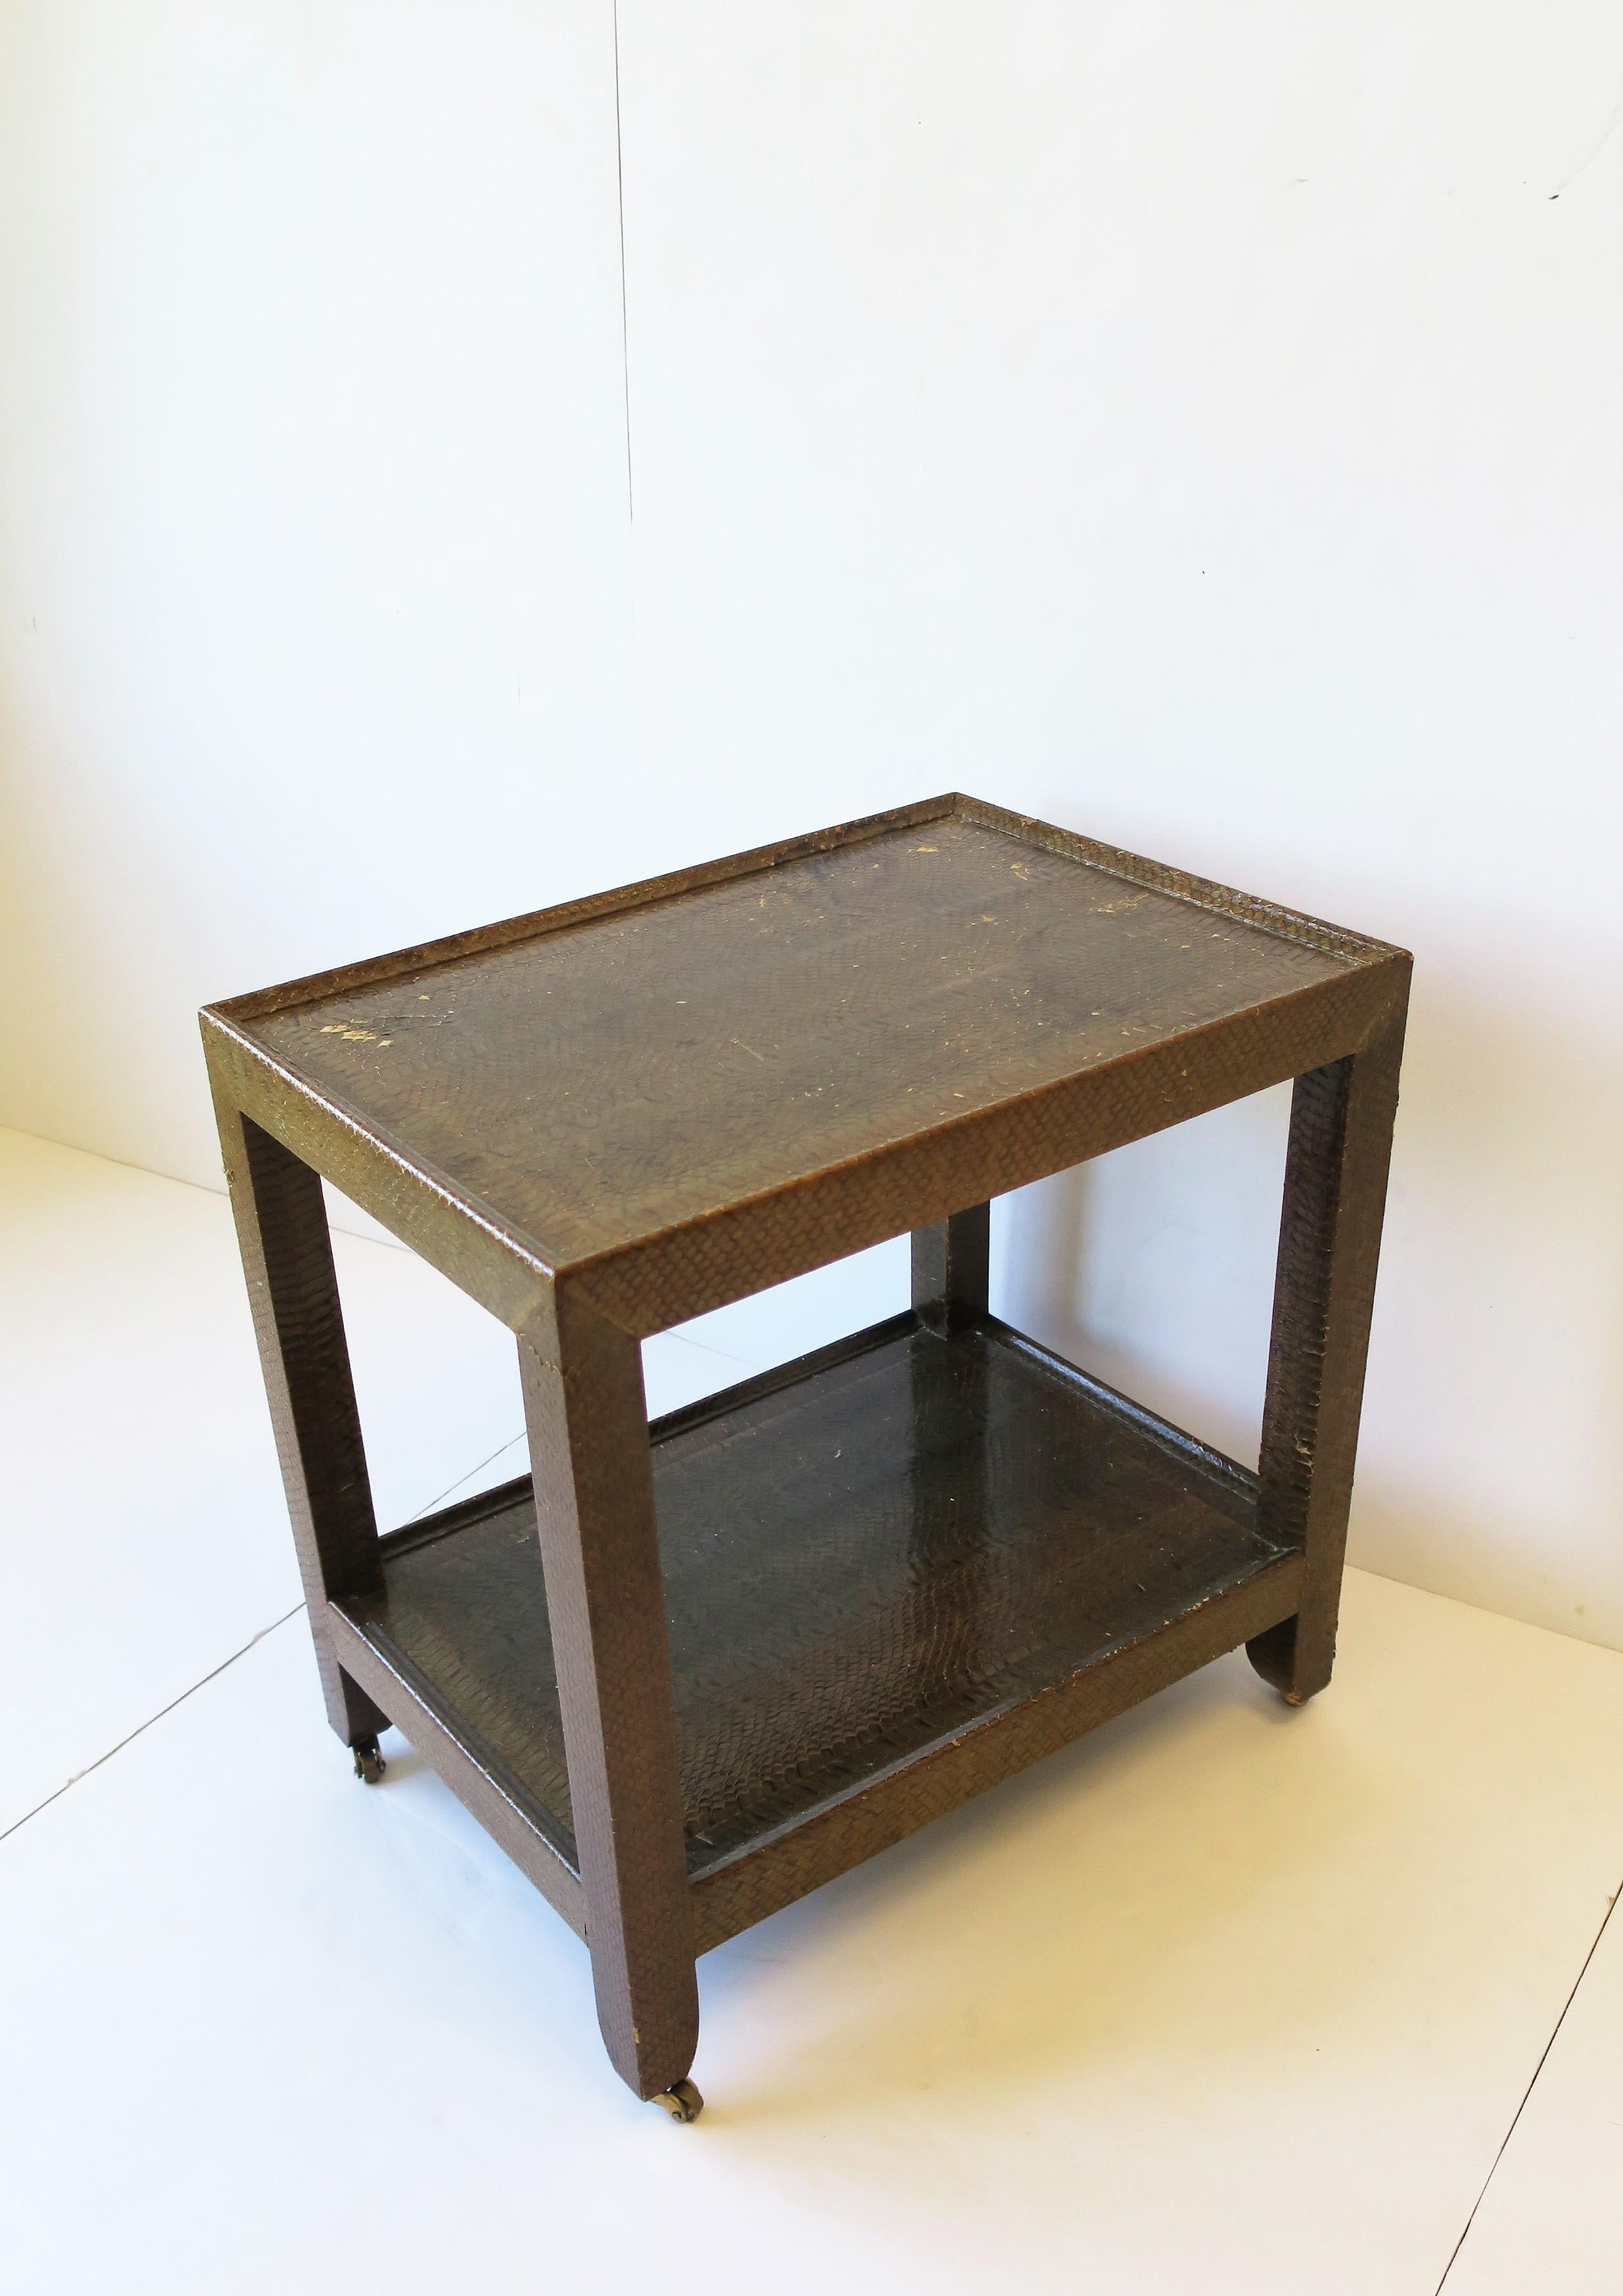 Magnifique table d'appoint ou de téléphone postmoderne du designer Karl Springer, 1990. La table est recouverte d'une magnifique peau de serpent authentique d'un brun moyen et repose sur de petites roues pivotantes en laiton. La pièce est composée